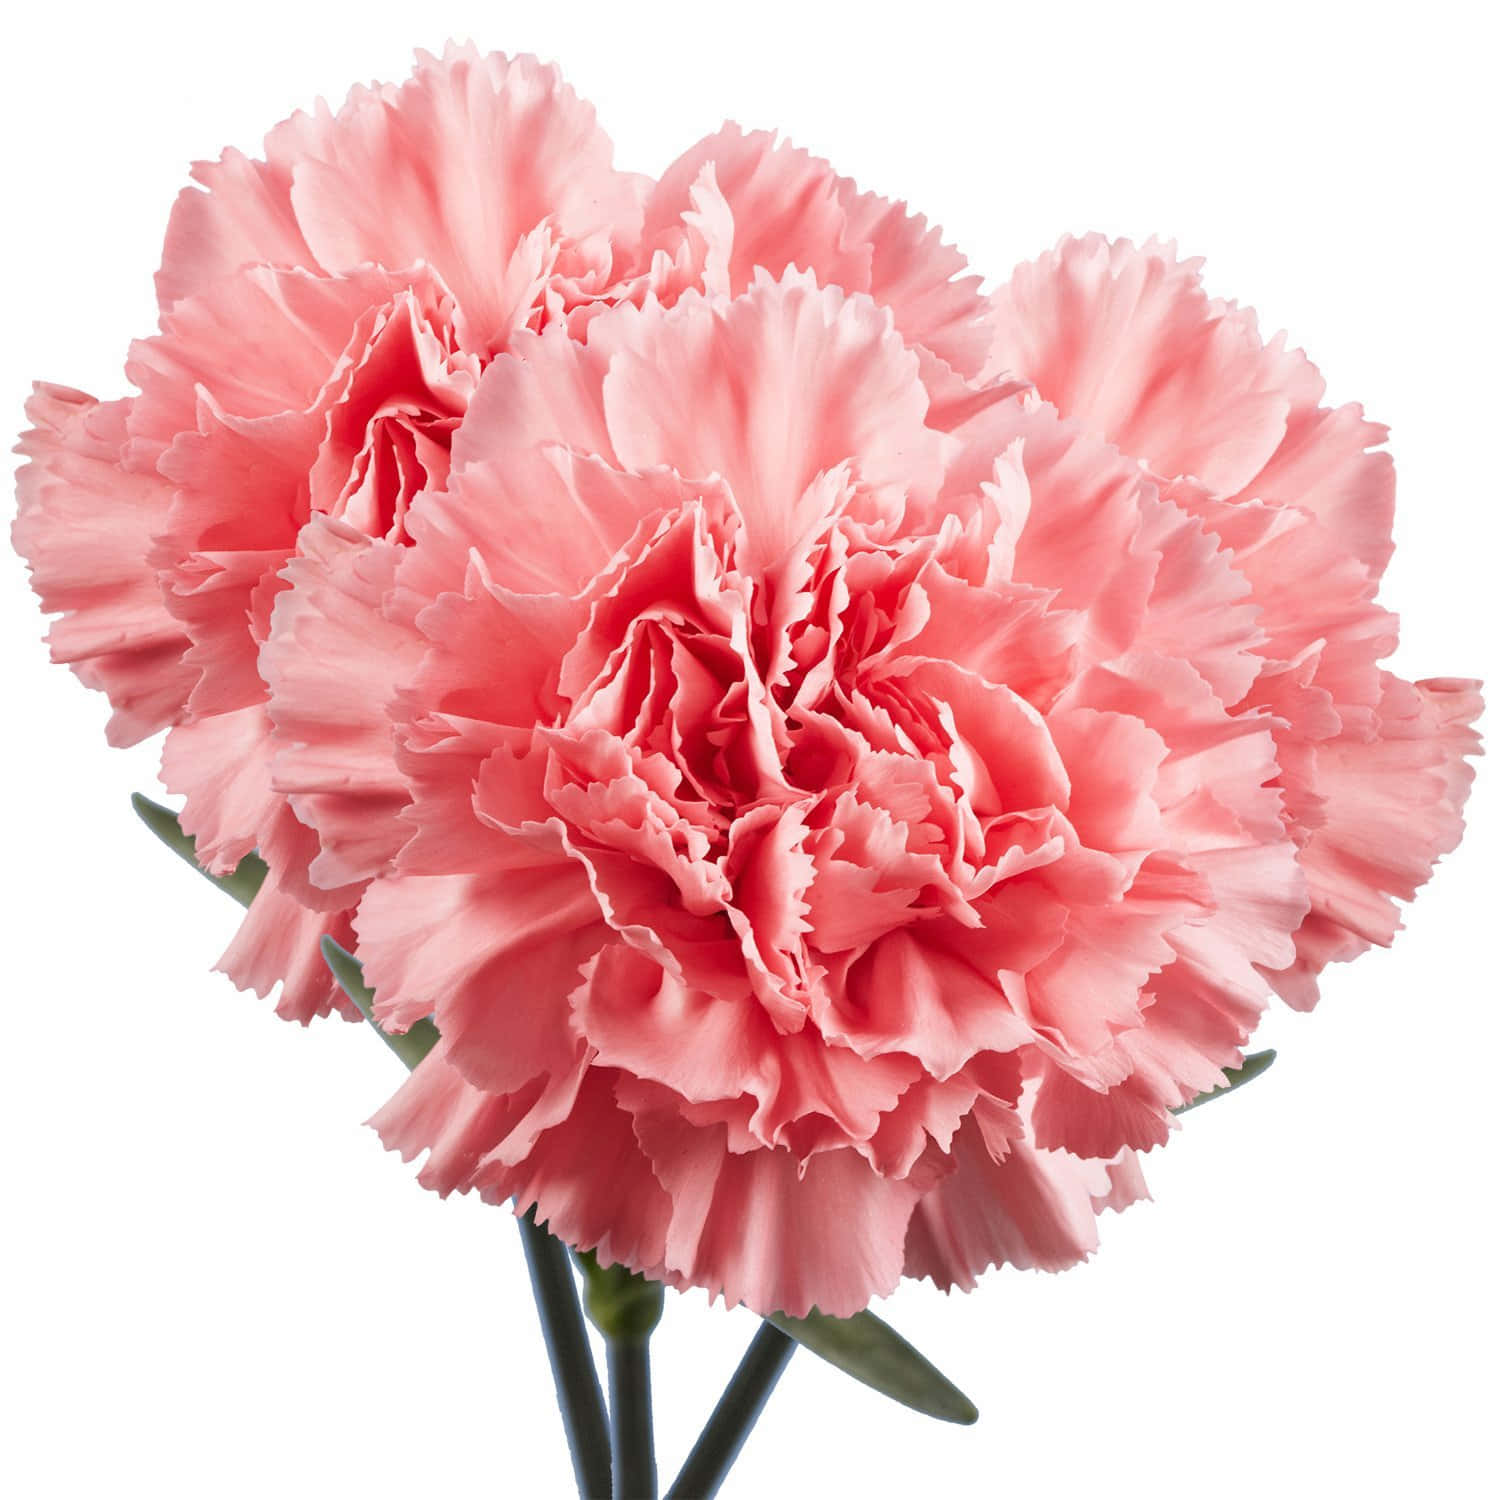 Igarofani Rosa Sono Il Modo Floreale Perfetto Per Esprimere Amore, Gratitudine E Ammirazione.